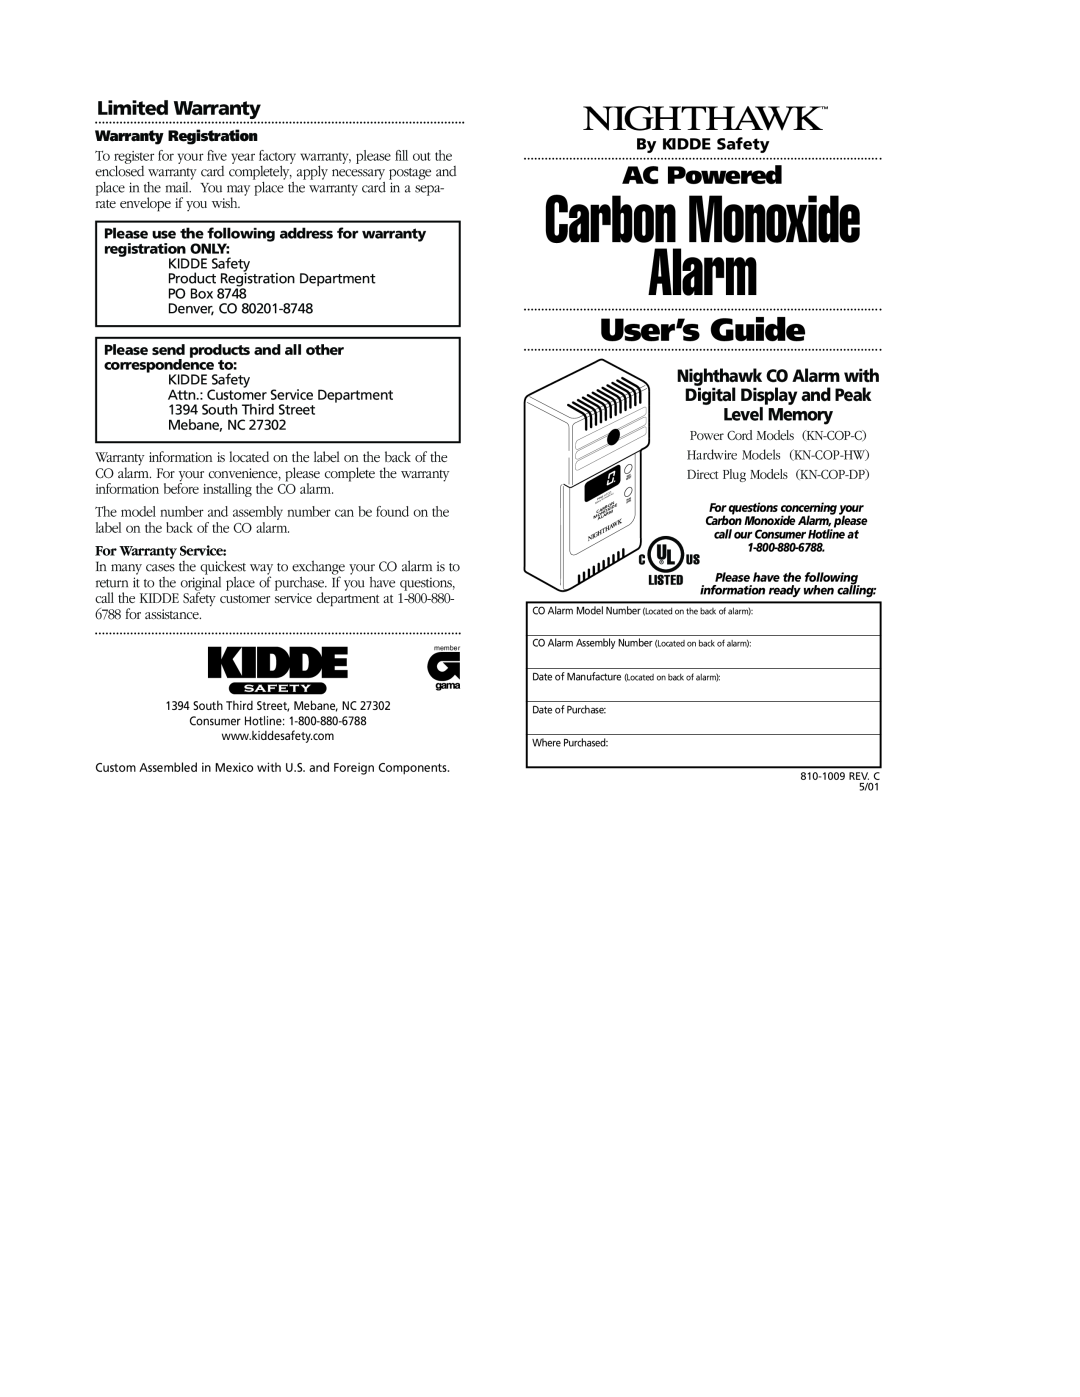 Nighthawk KN-COP-DP warranty Alarm, Carbon Monoxide, User’s Guide, AC Powered, By KIDDE Safety, Warranty Registration 